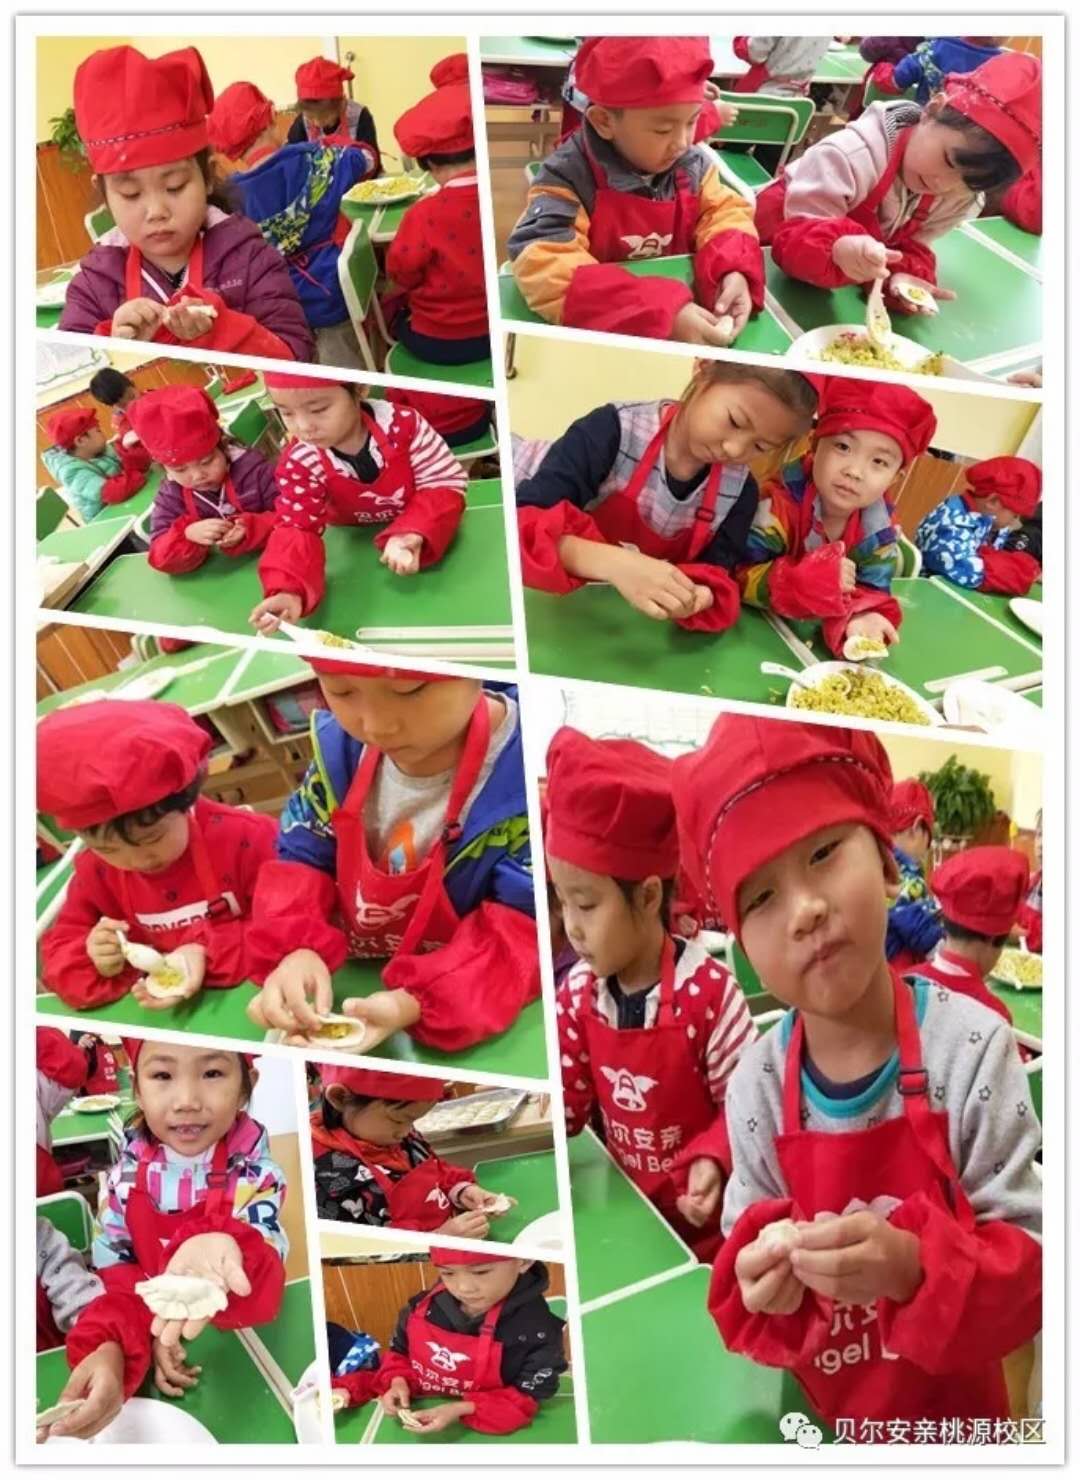 孩子们在包南瓜馅的饺子